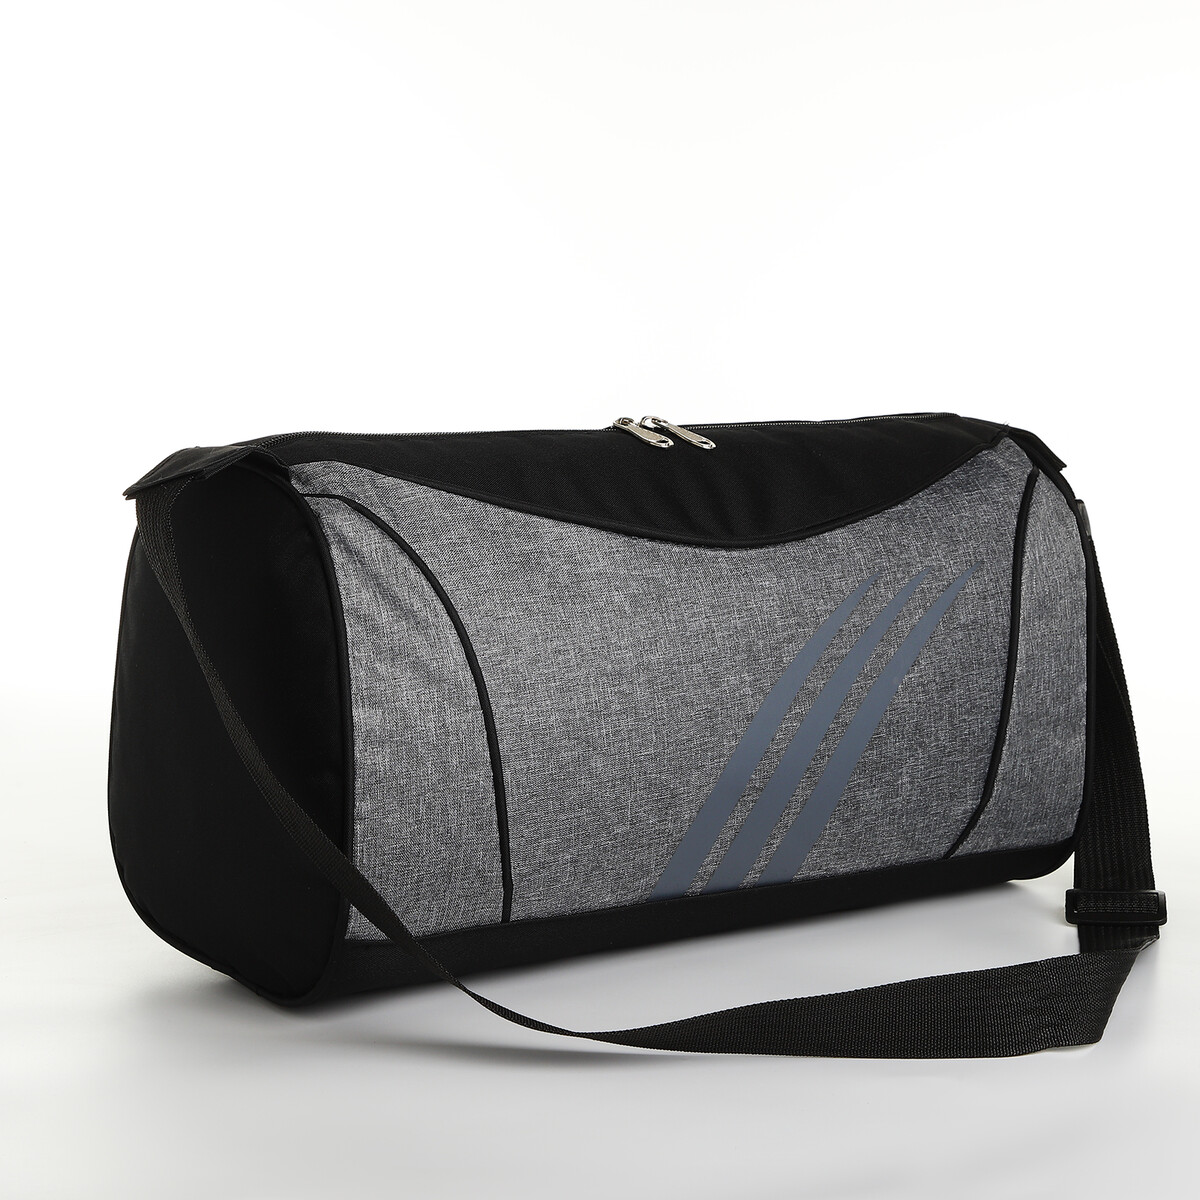 Сумка спортивная на молнии, длинный ремень, цвет черный/серый сумка спортивная на молнии длинный ремень серый